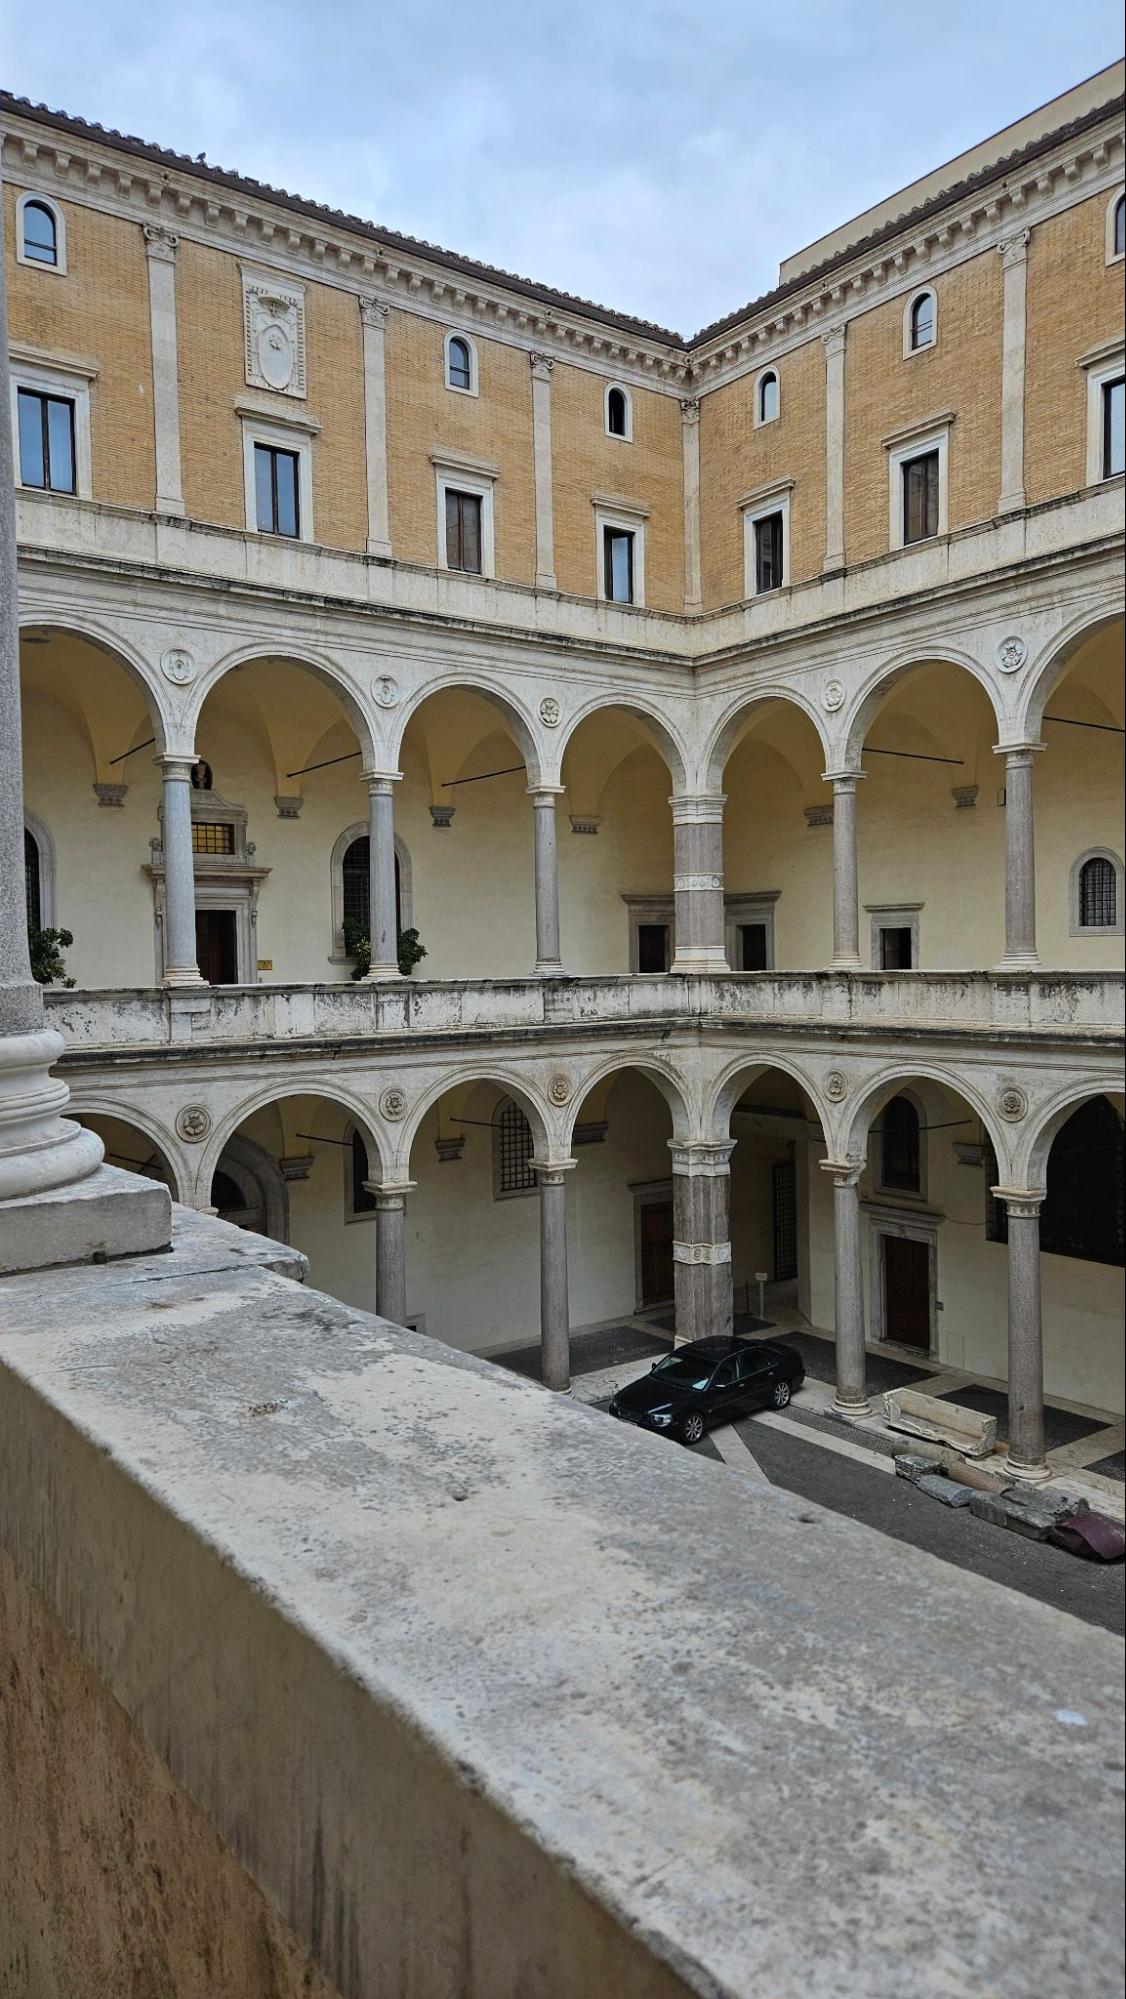 Kuvassa näkyy Rooman keskustassa sijaitseva Palazzo della Cancellerian sisäpiha. Kivinen rakennus on erittäin mahtipontinen ja tyylitelty. Komeat marmoriset pylväsrivit koristeluineen lisäävät ylellisyyden tuntua. Kahdessa alemmassa kerroksessa voi kulkea pylväskäytäviä, mutta kaksi ylempää kerrosta ovat tiiliverhoiltua julkisivua isoine ja pienine ikkunoineen.